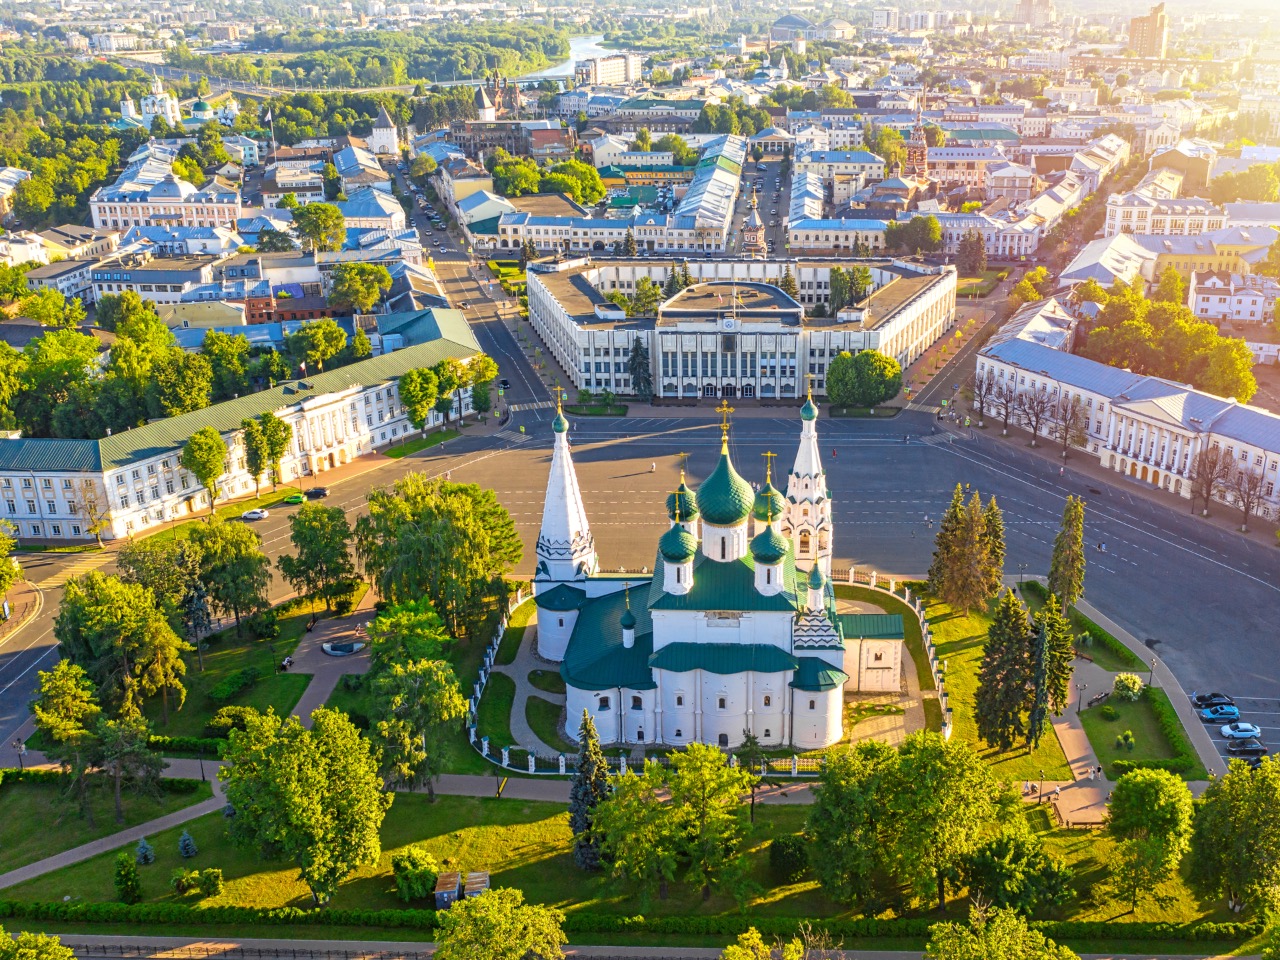 Столица "Золотого кольца" — Ярославль с аудиогидом | Цена 399₽, отзывы, описание экскурсии